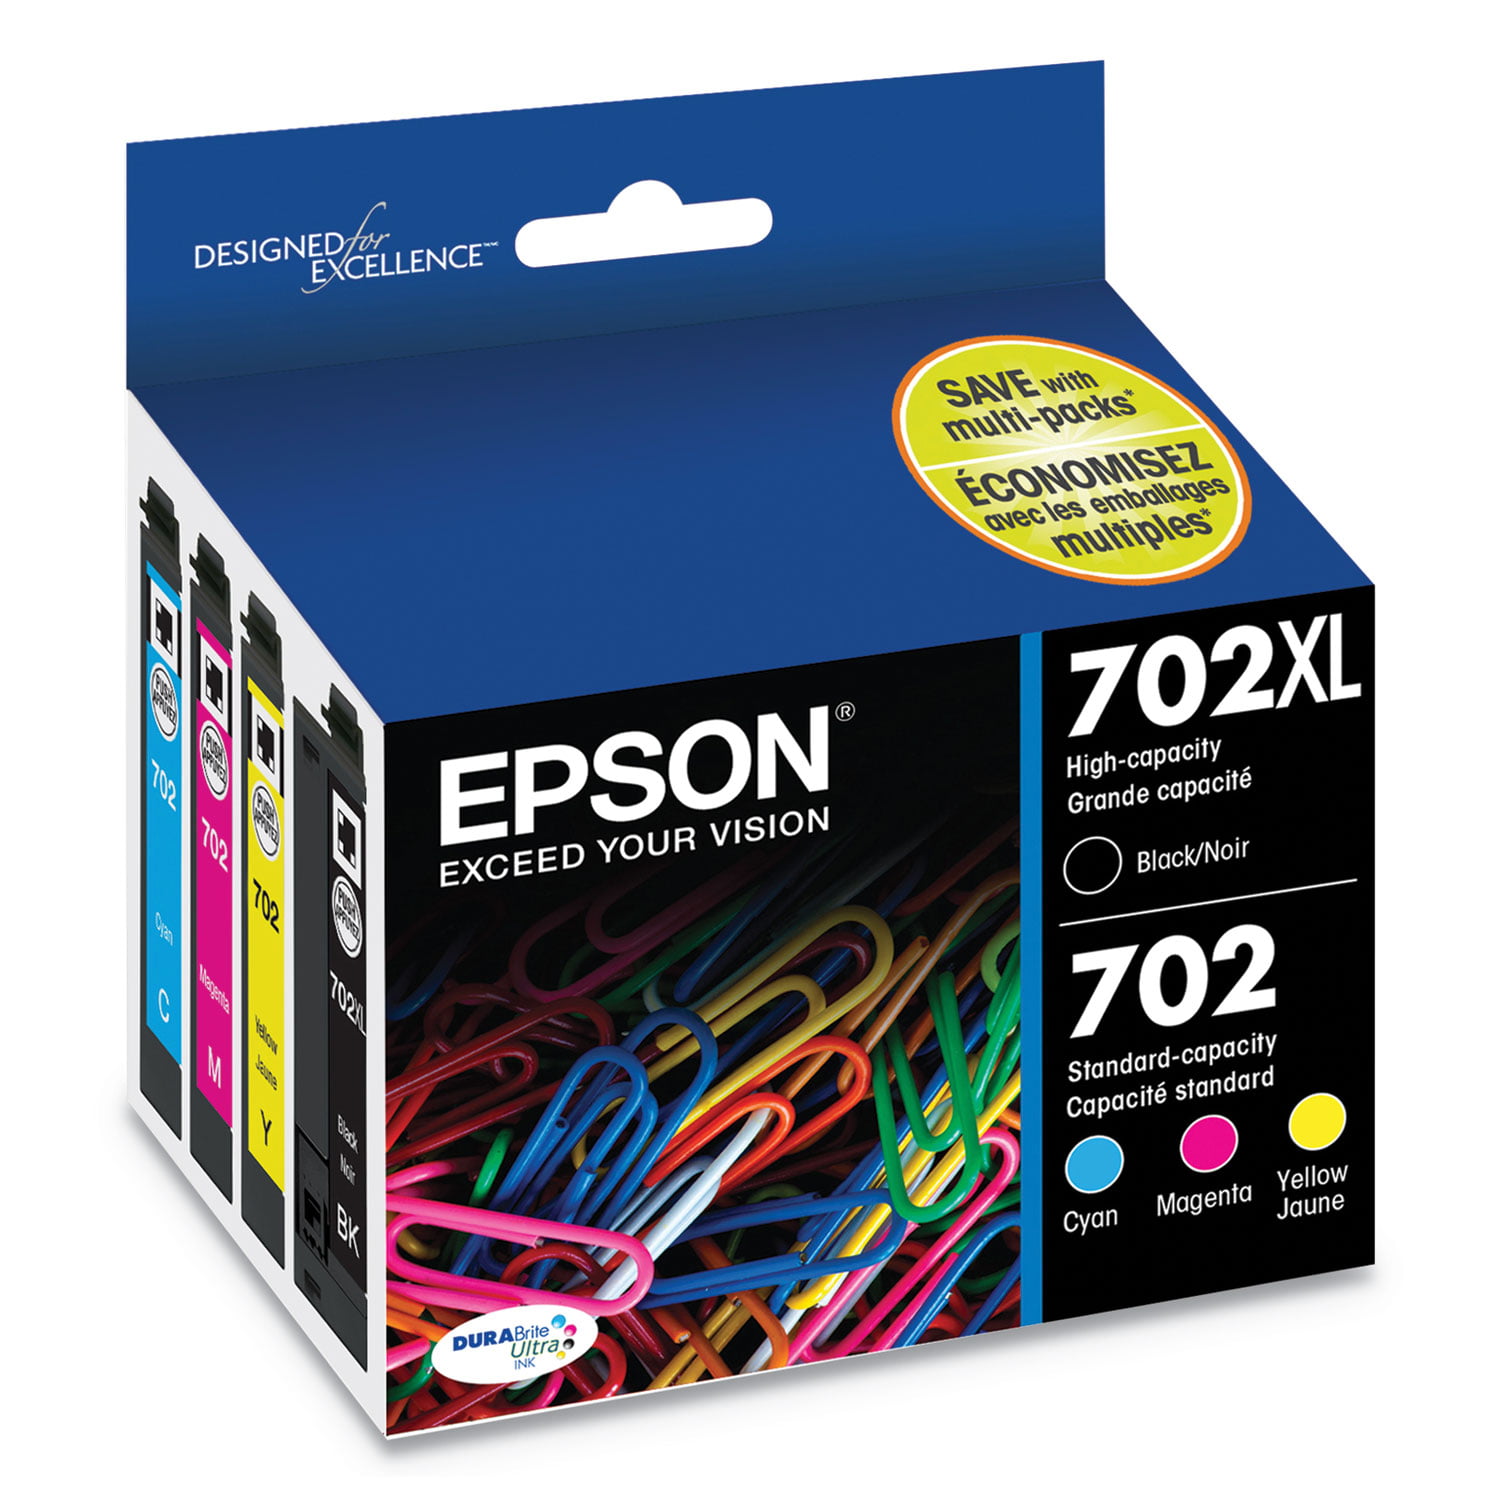 T702XL-BCS Epson DURABrite Ultra 702XL Black/Tricolor Ink Cartridges for sale online 